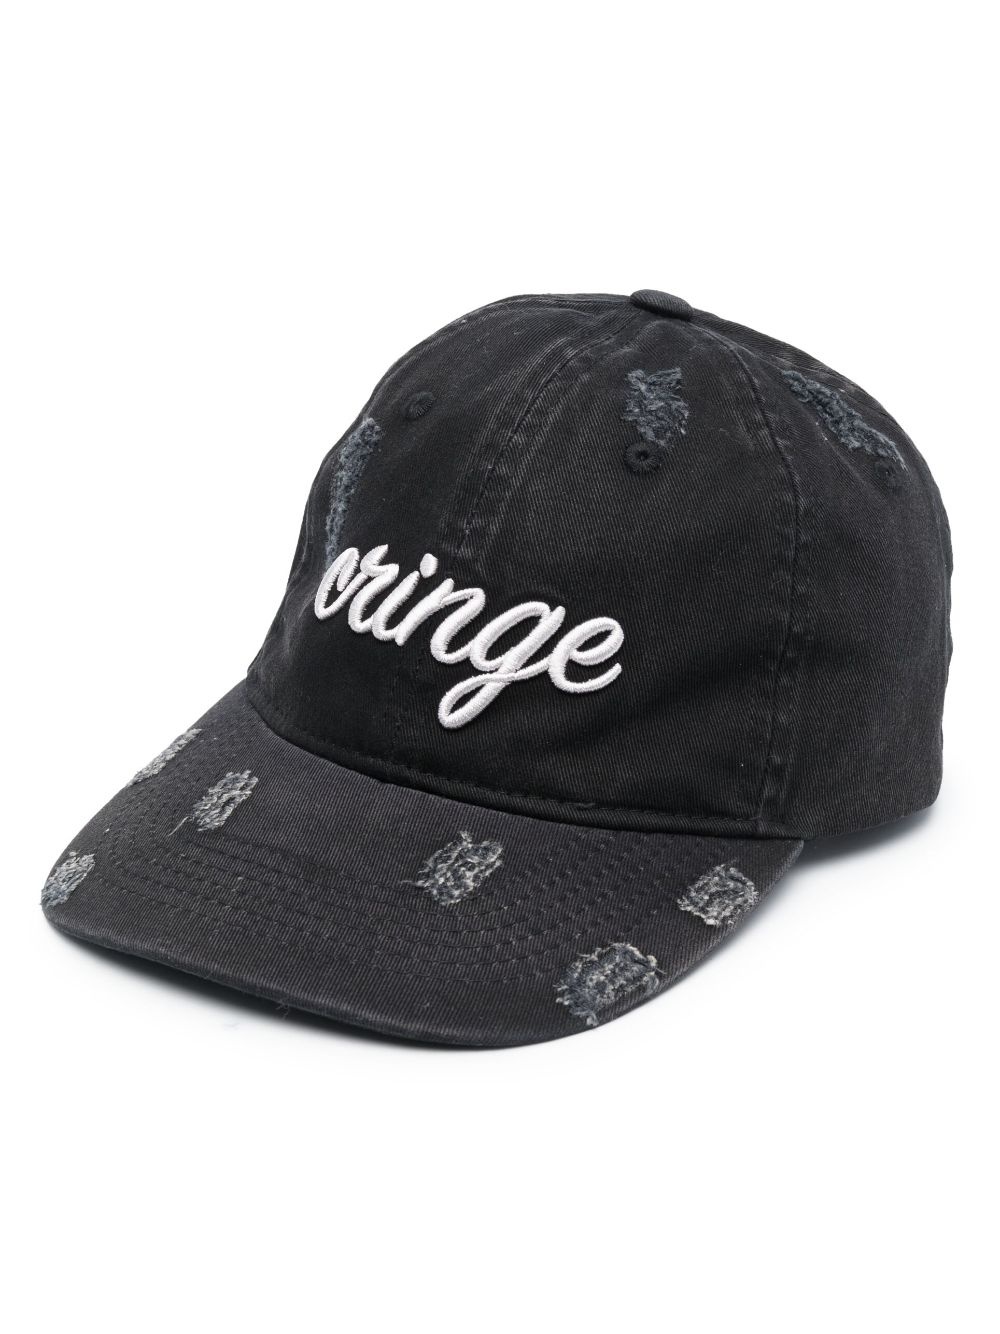 Cringe embroidered baseball hat - 1